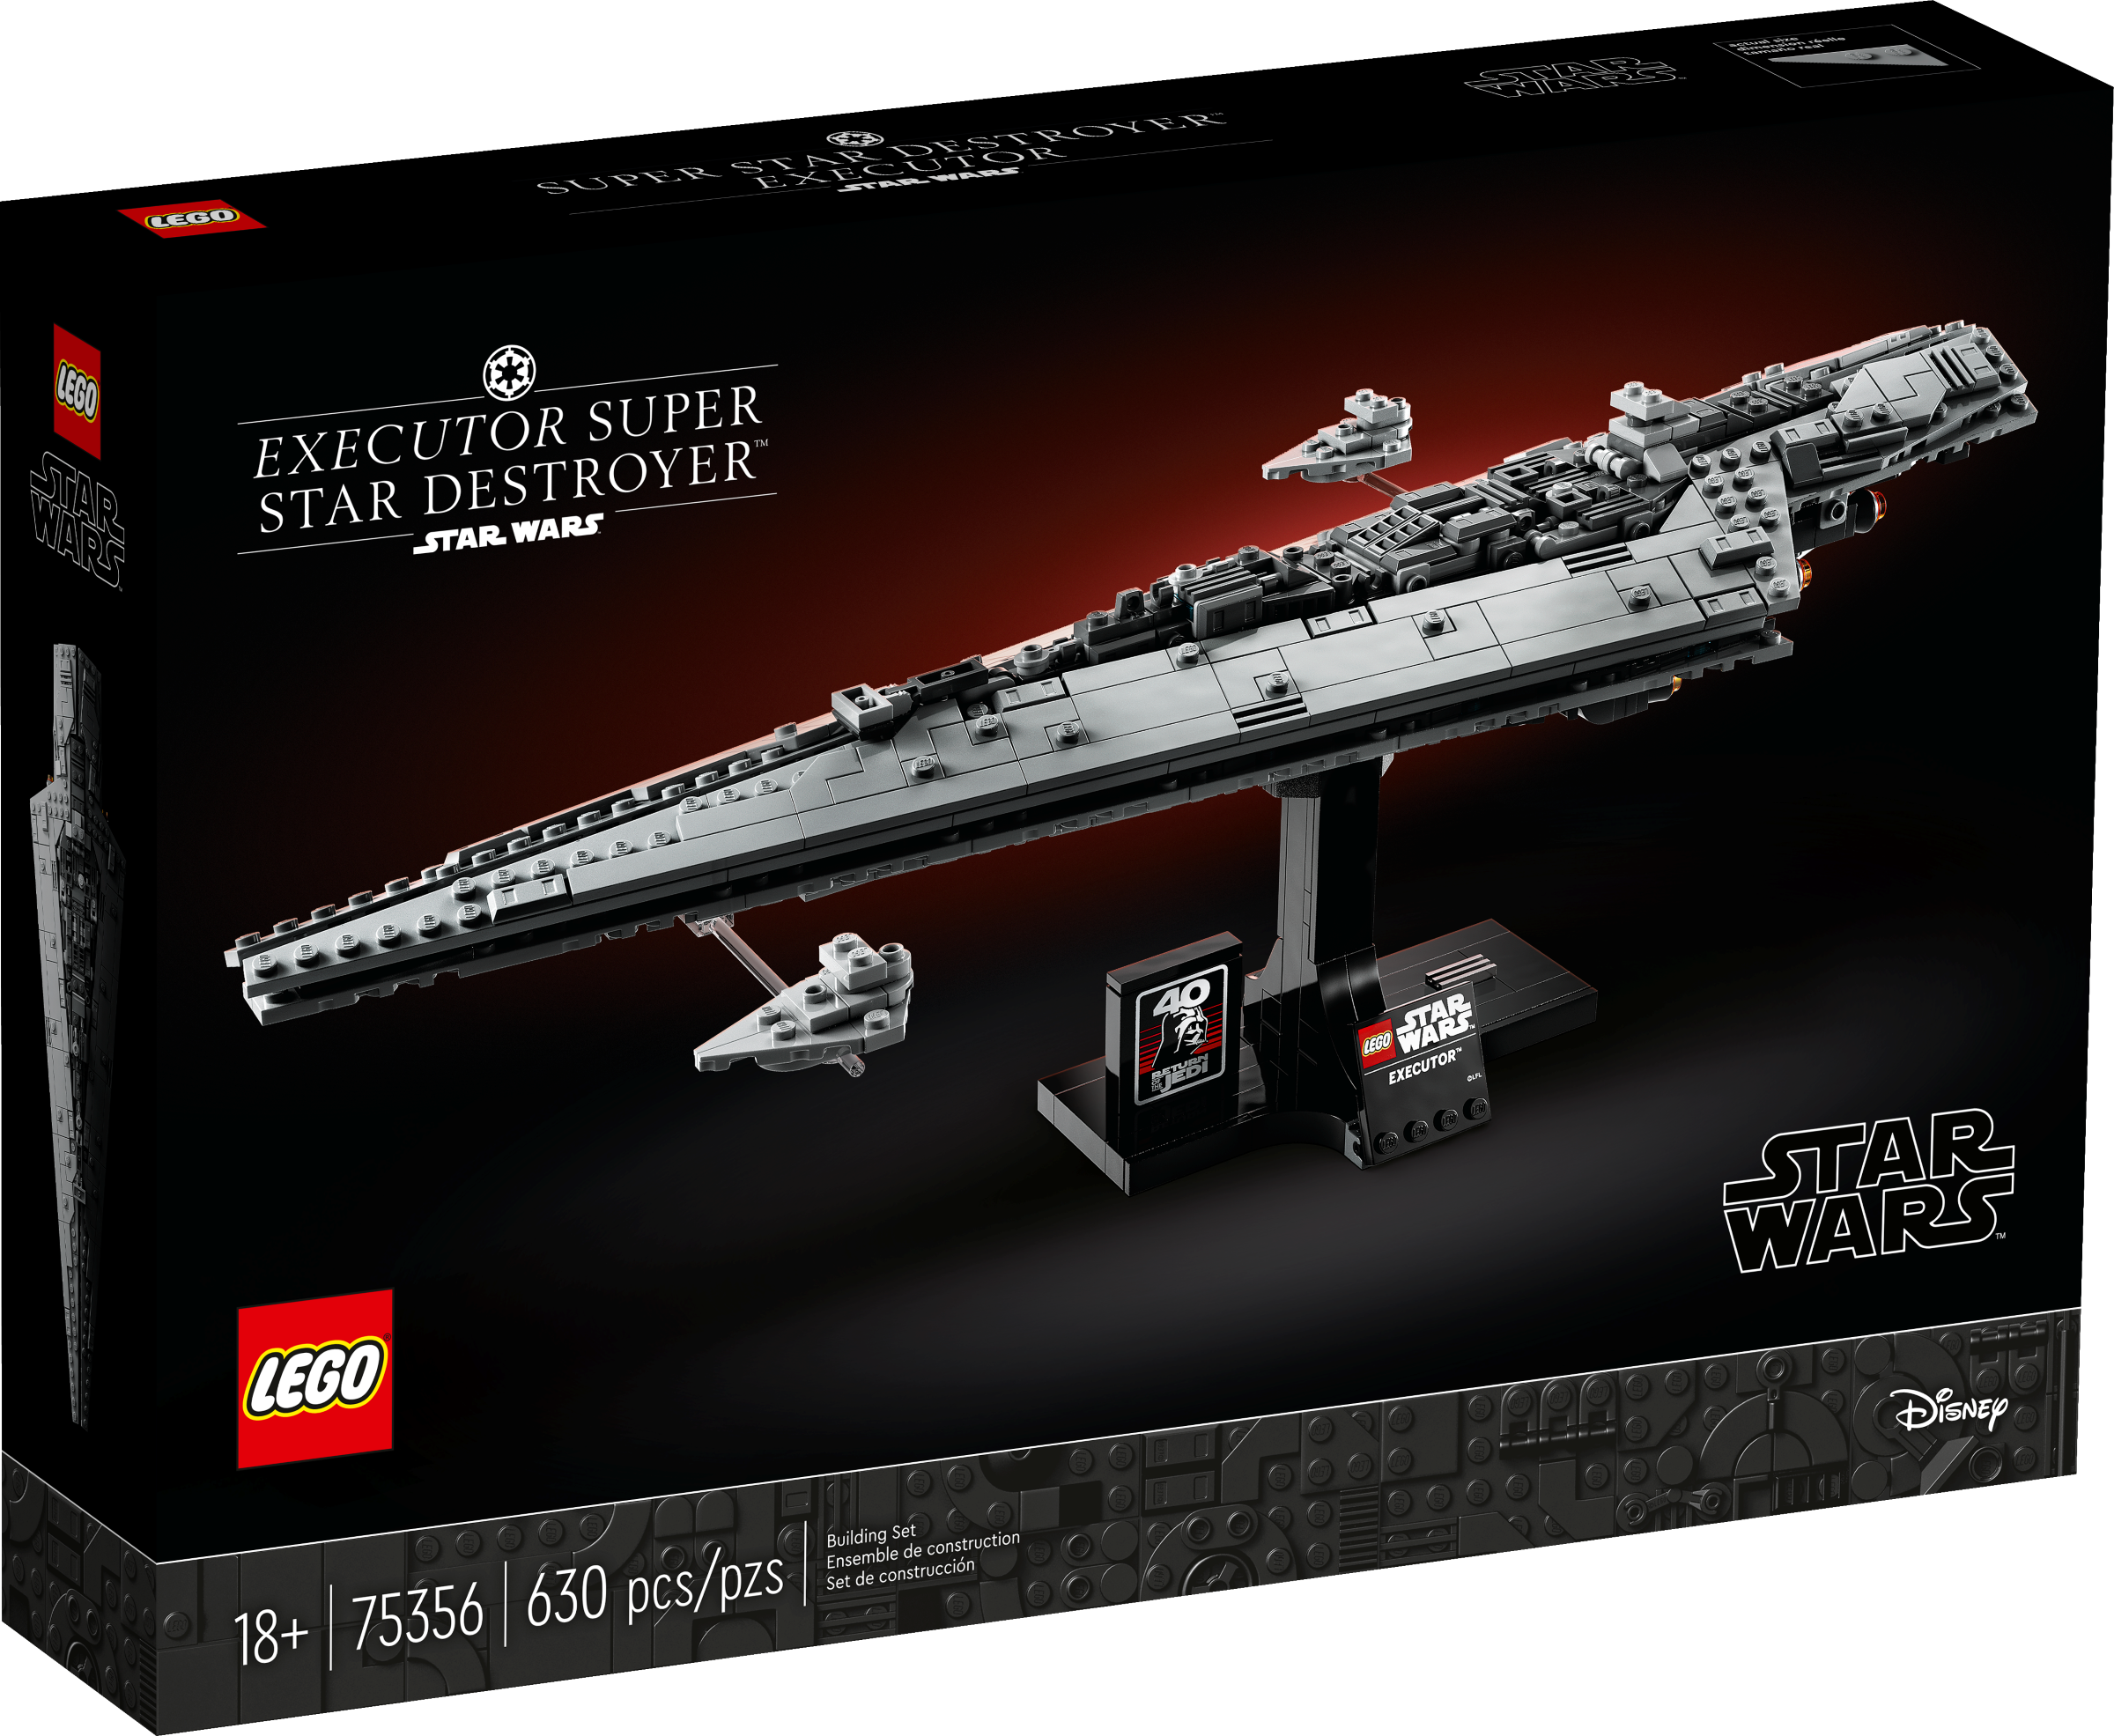 LEGO Star Wars Supersternzerstörer Executor (75356) - im GOLDSTIEN.SHOP verfügbar mit Gratisversand ab Schweizer Lager! (5702017433813)